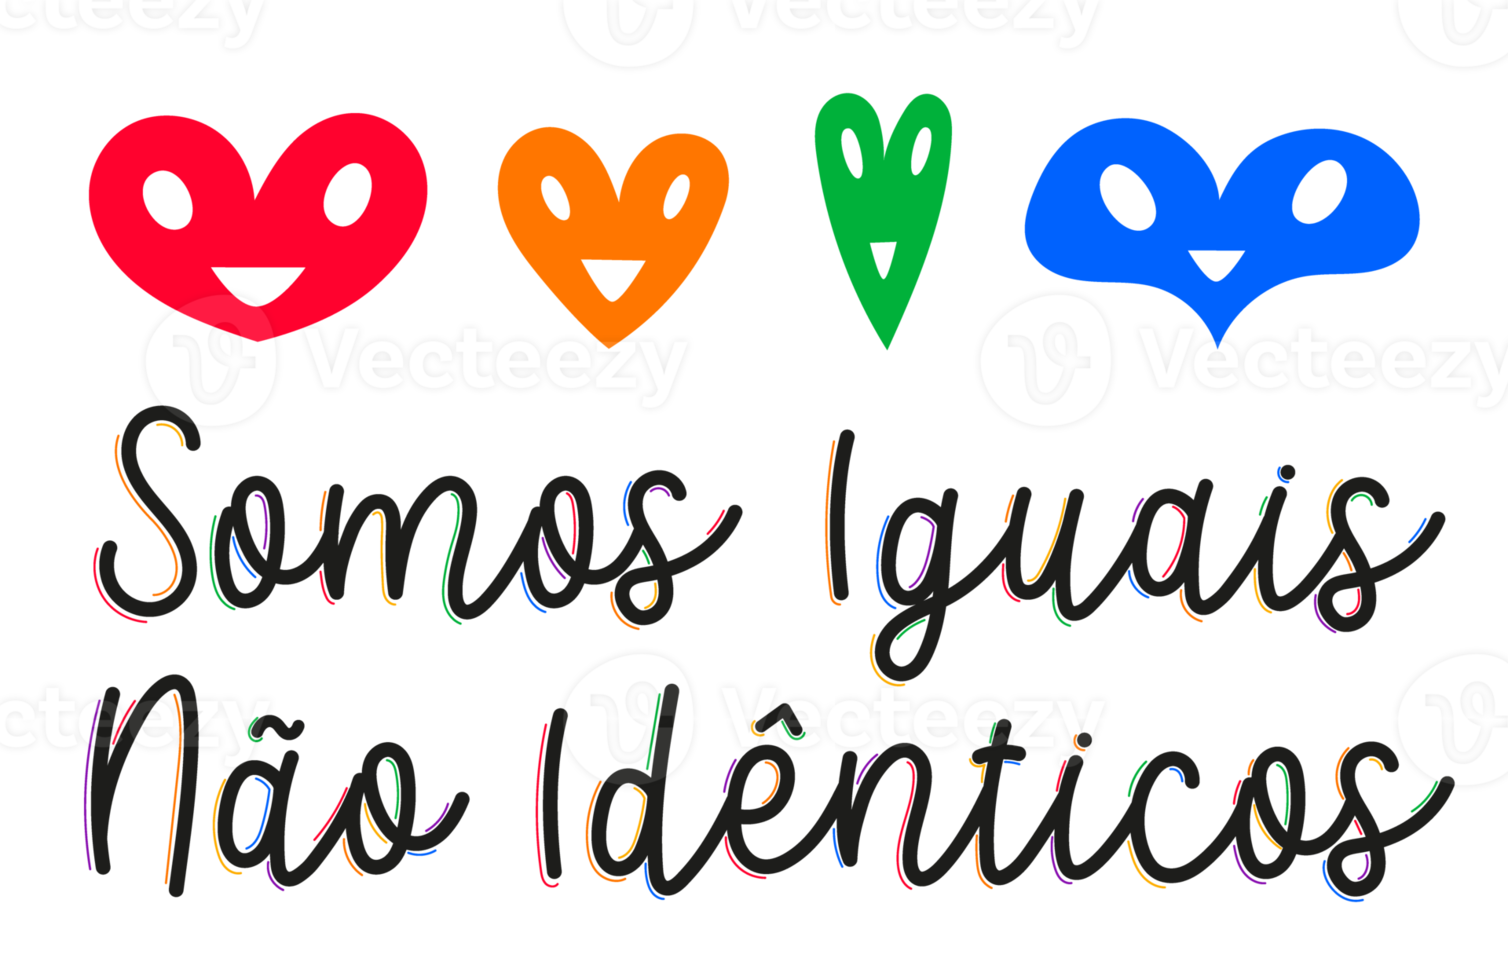 diversidade colorida incentivando letras cursivas em português com corações. cores lgbtqia. tradução - somos iguais, não idênticos. png